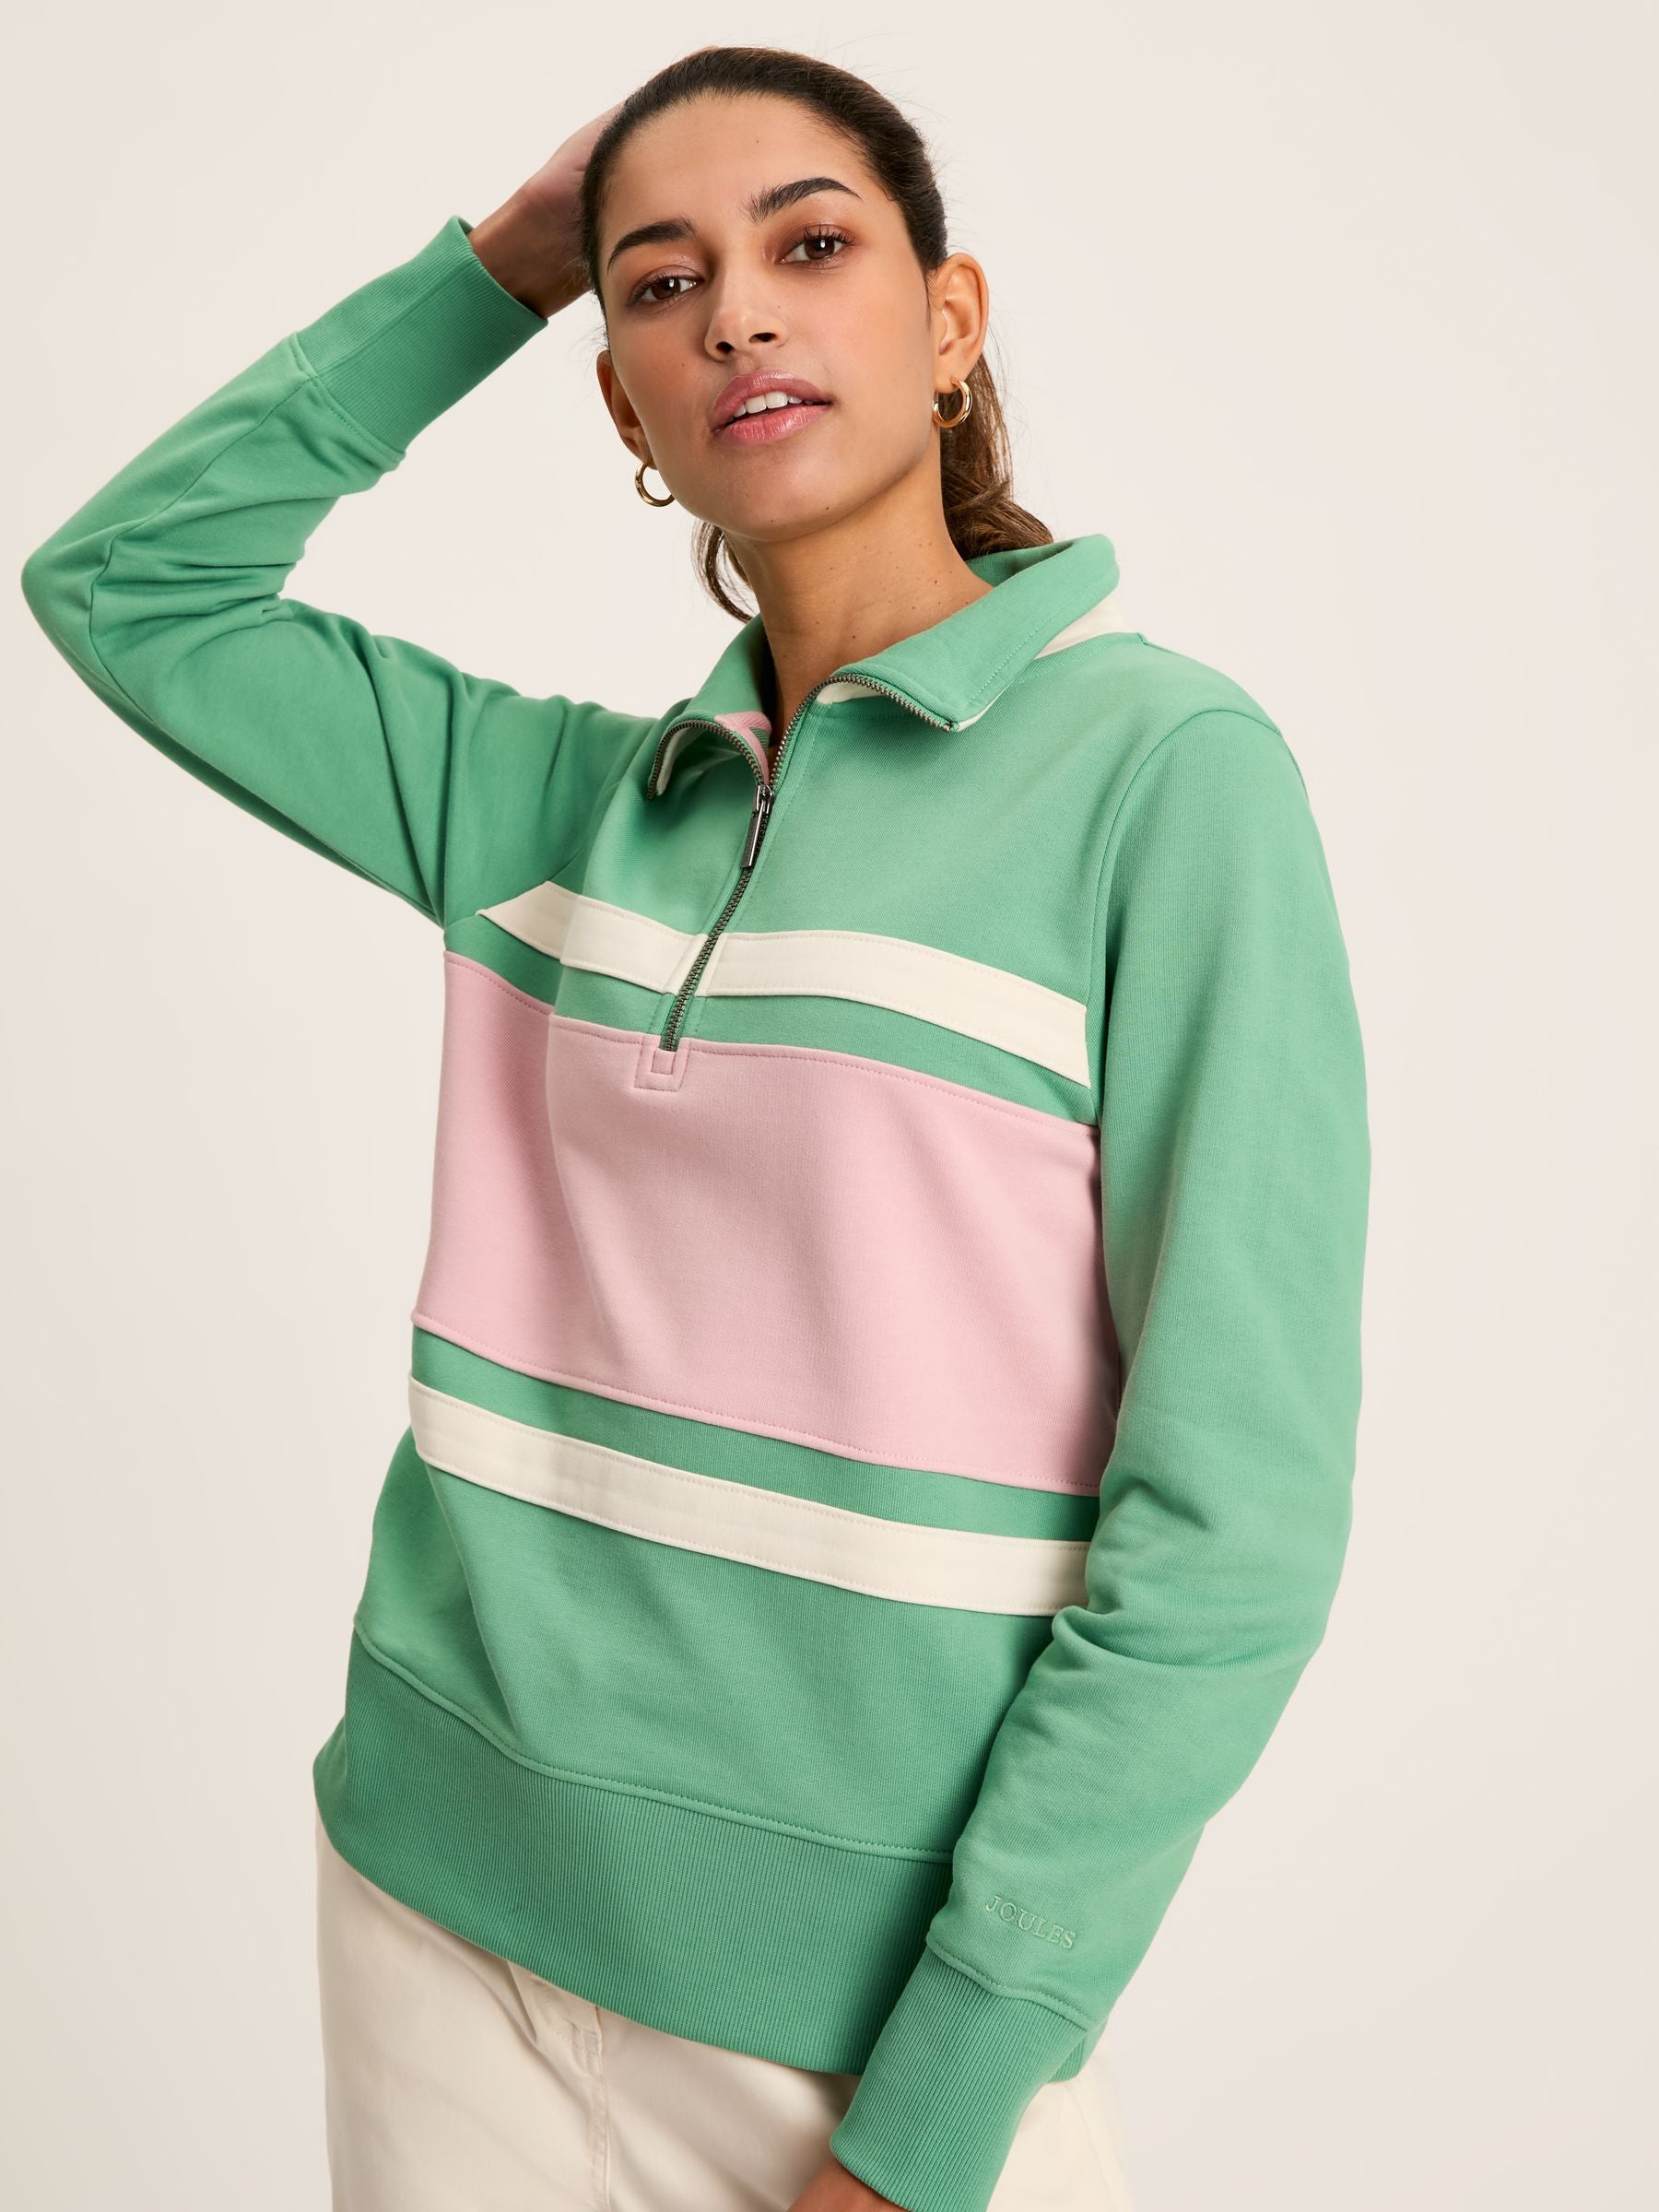 Tadley Green/Pink Quarter Zip Sweatshirt